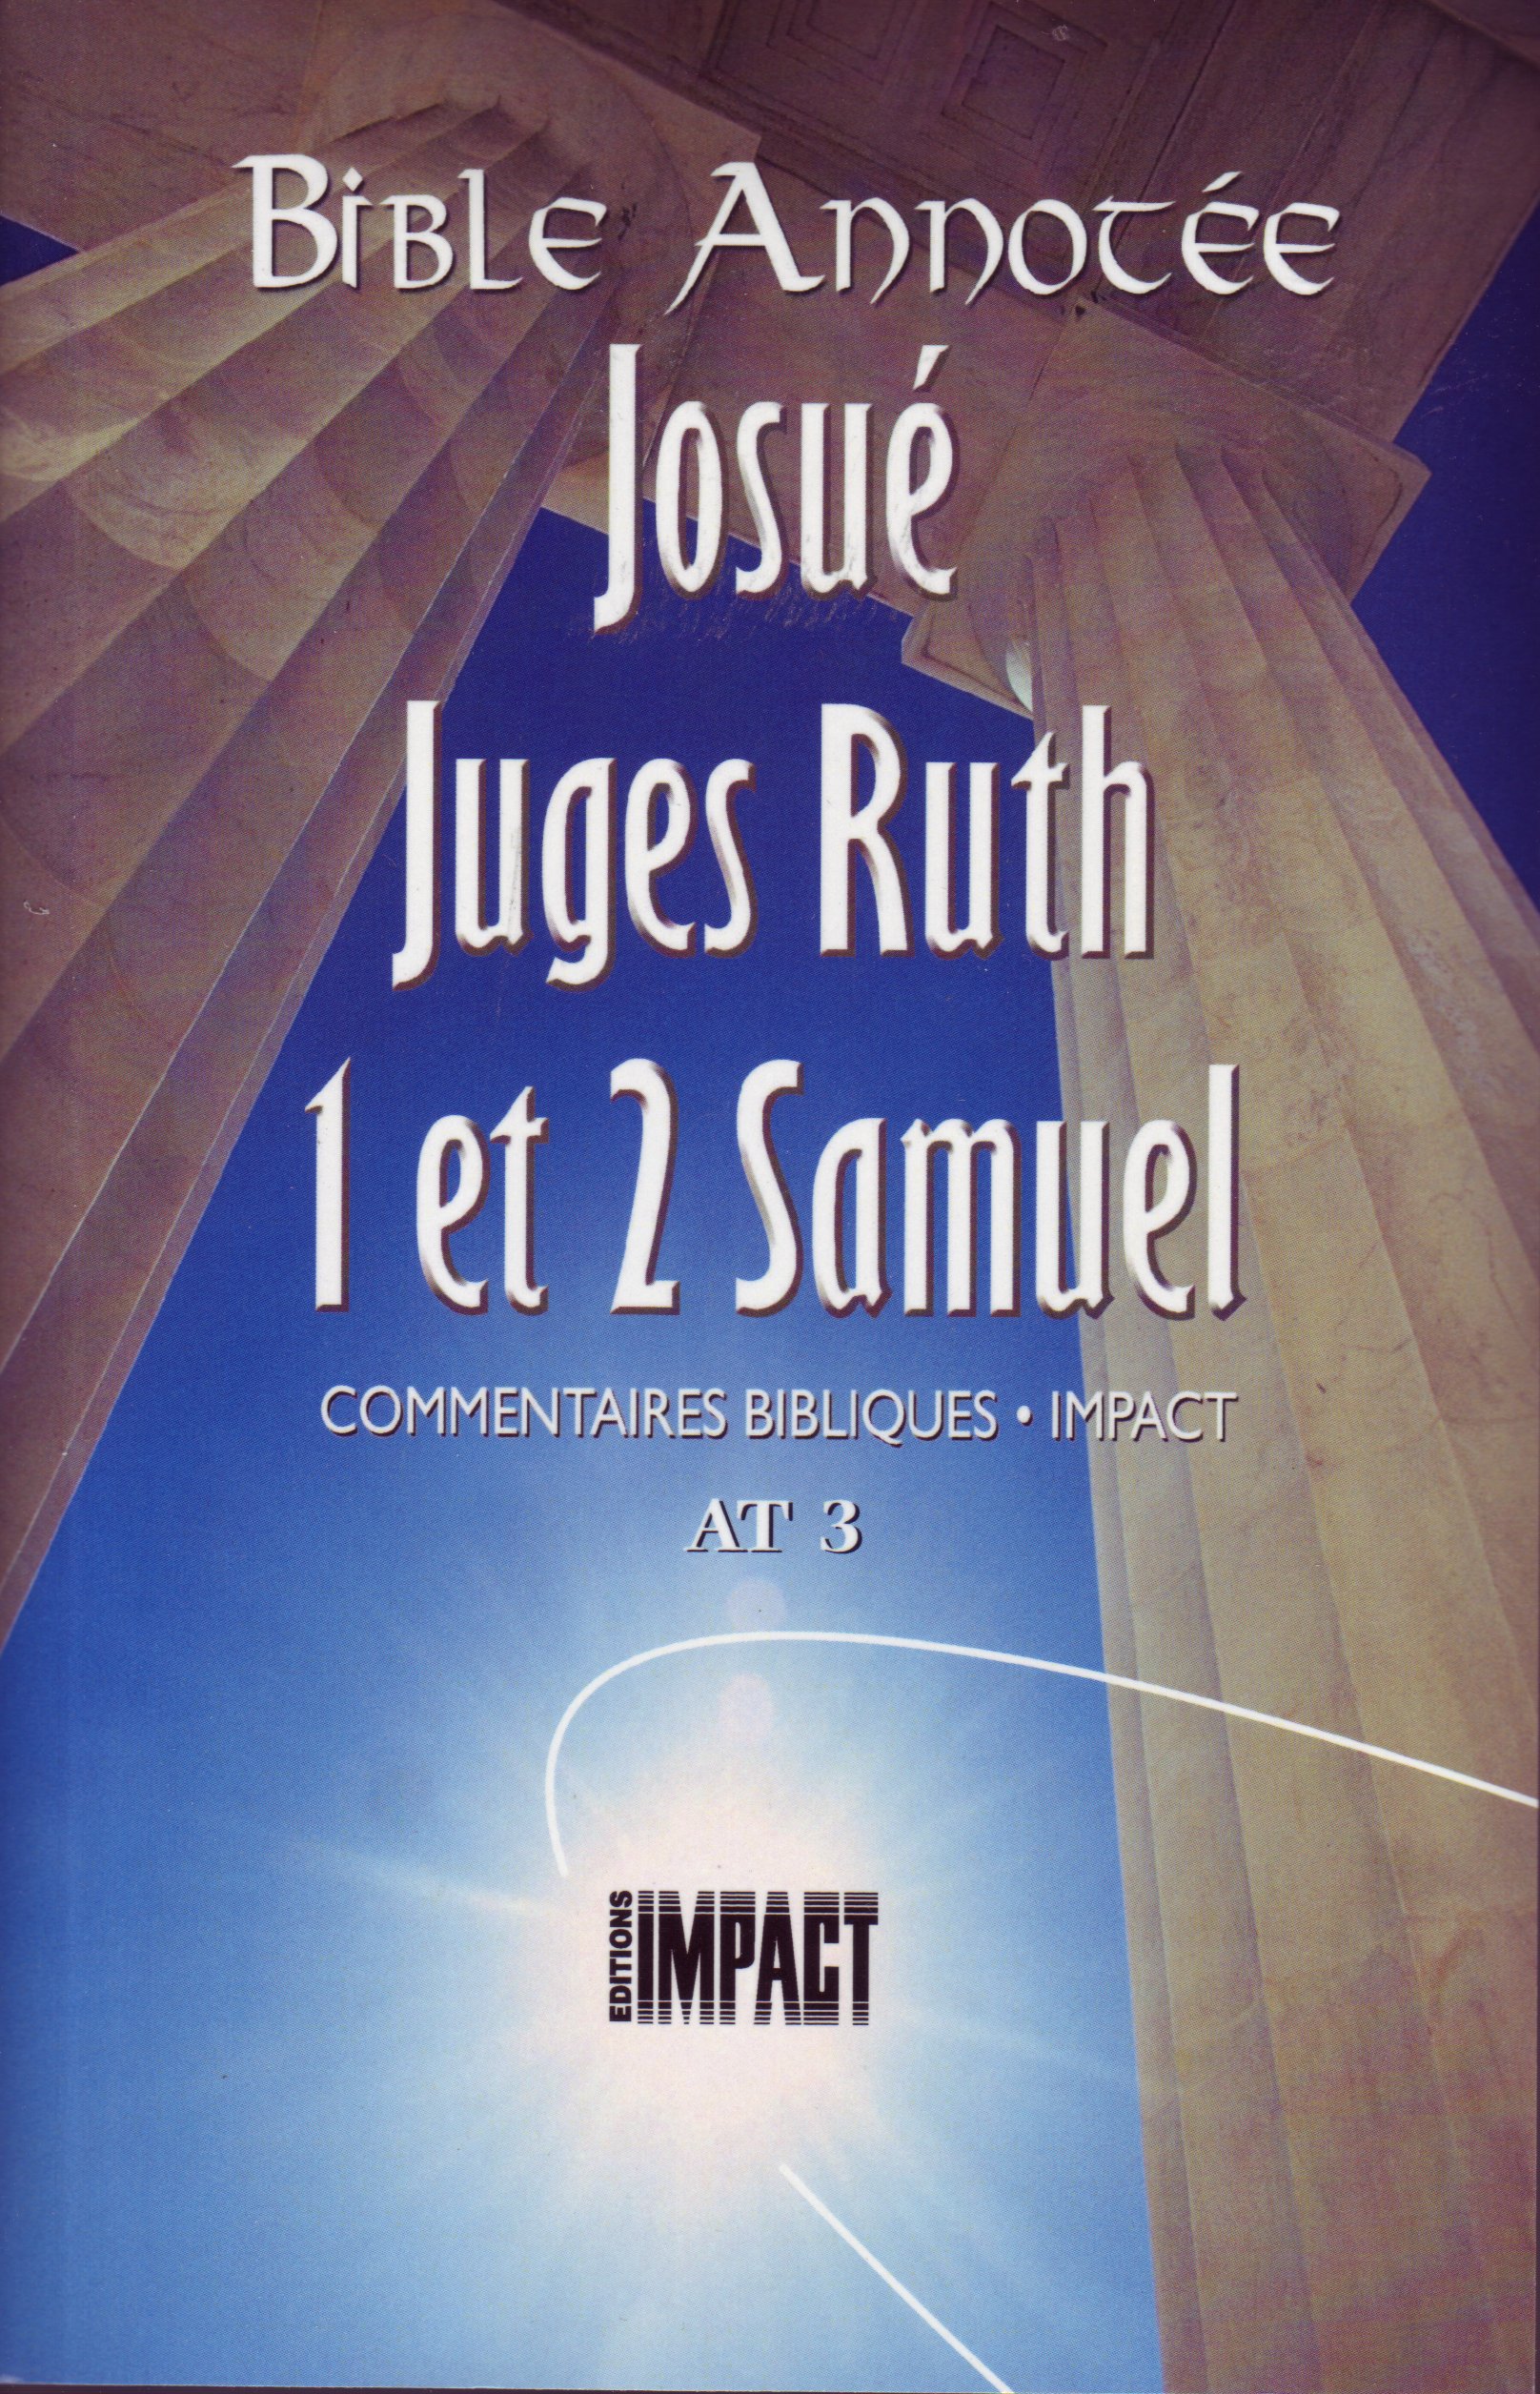 Bible Annotée - Josué Juges Ruth 1et 2 Samuel (La) - Commentaires bibliques Impact AT 3